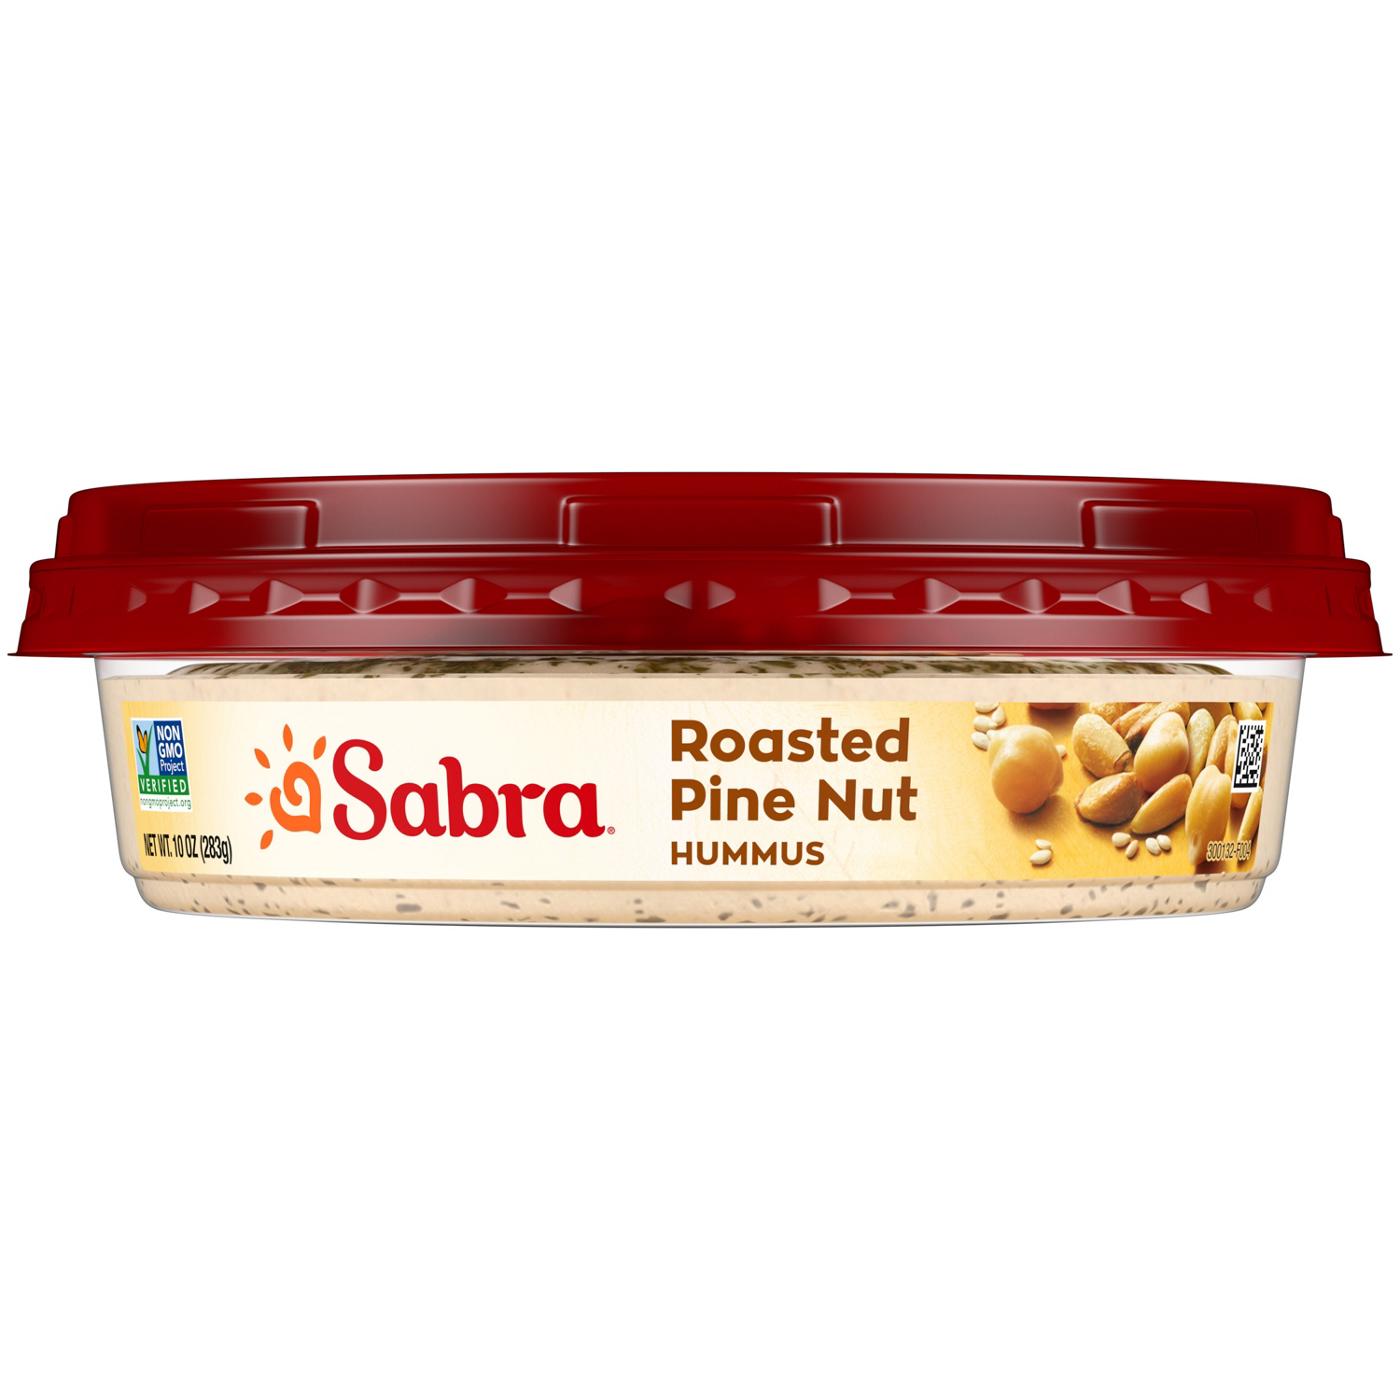 Sabra Roasted Pine Nut Hummus; image 2 of 6